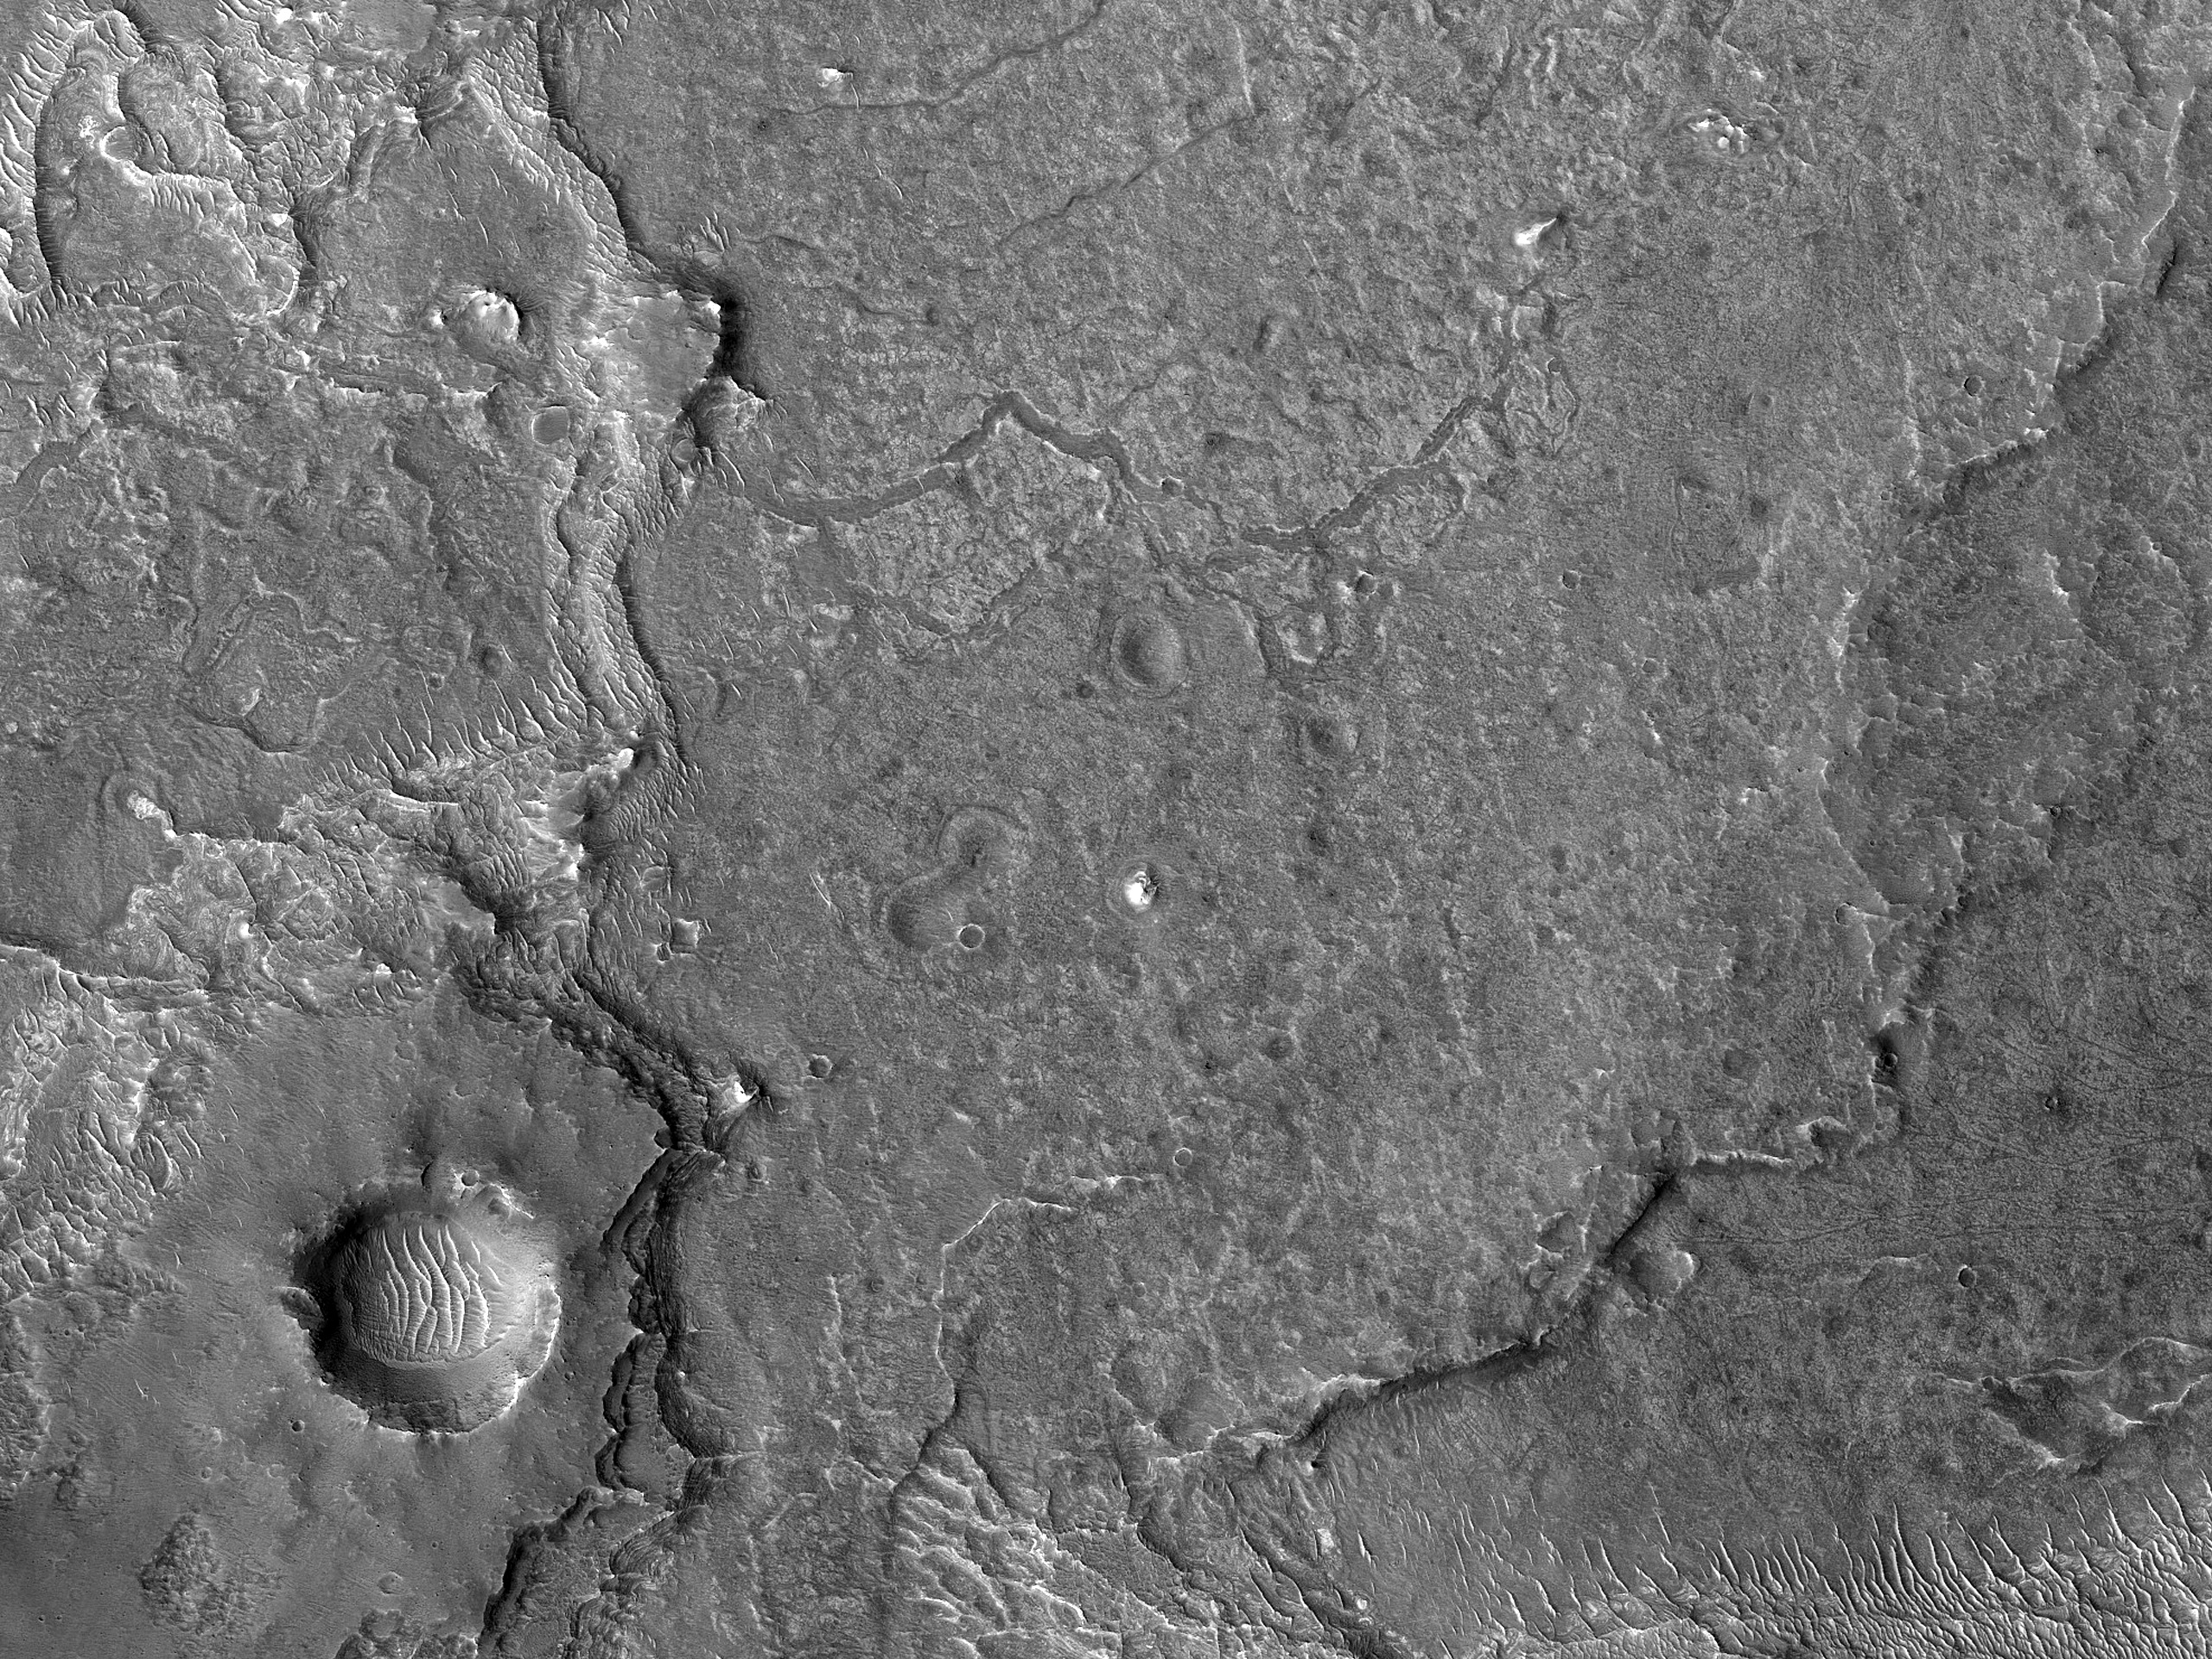 Sinuous Ridges near Juventae Chasma